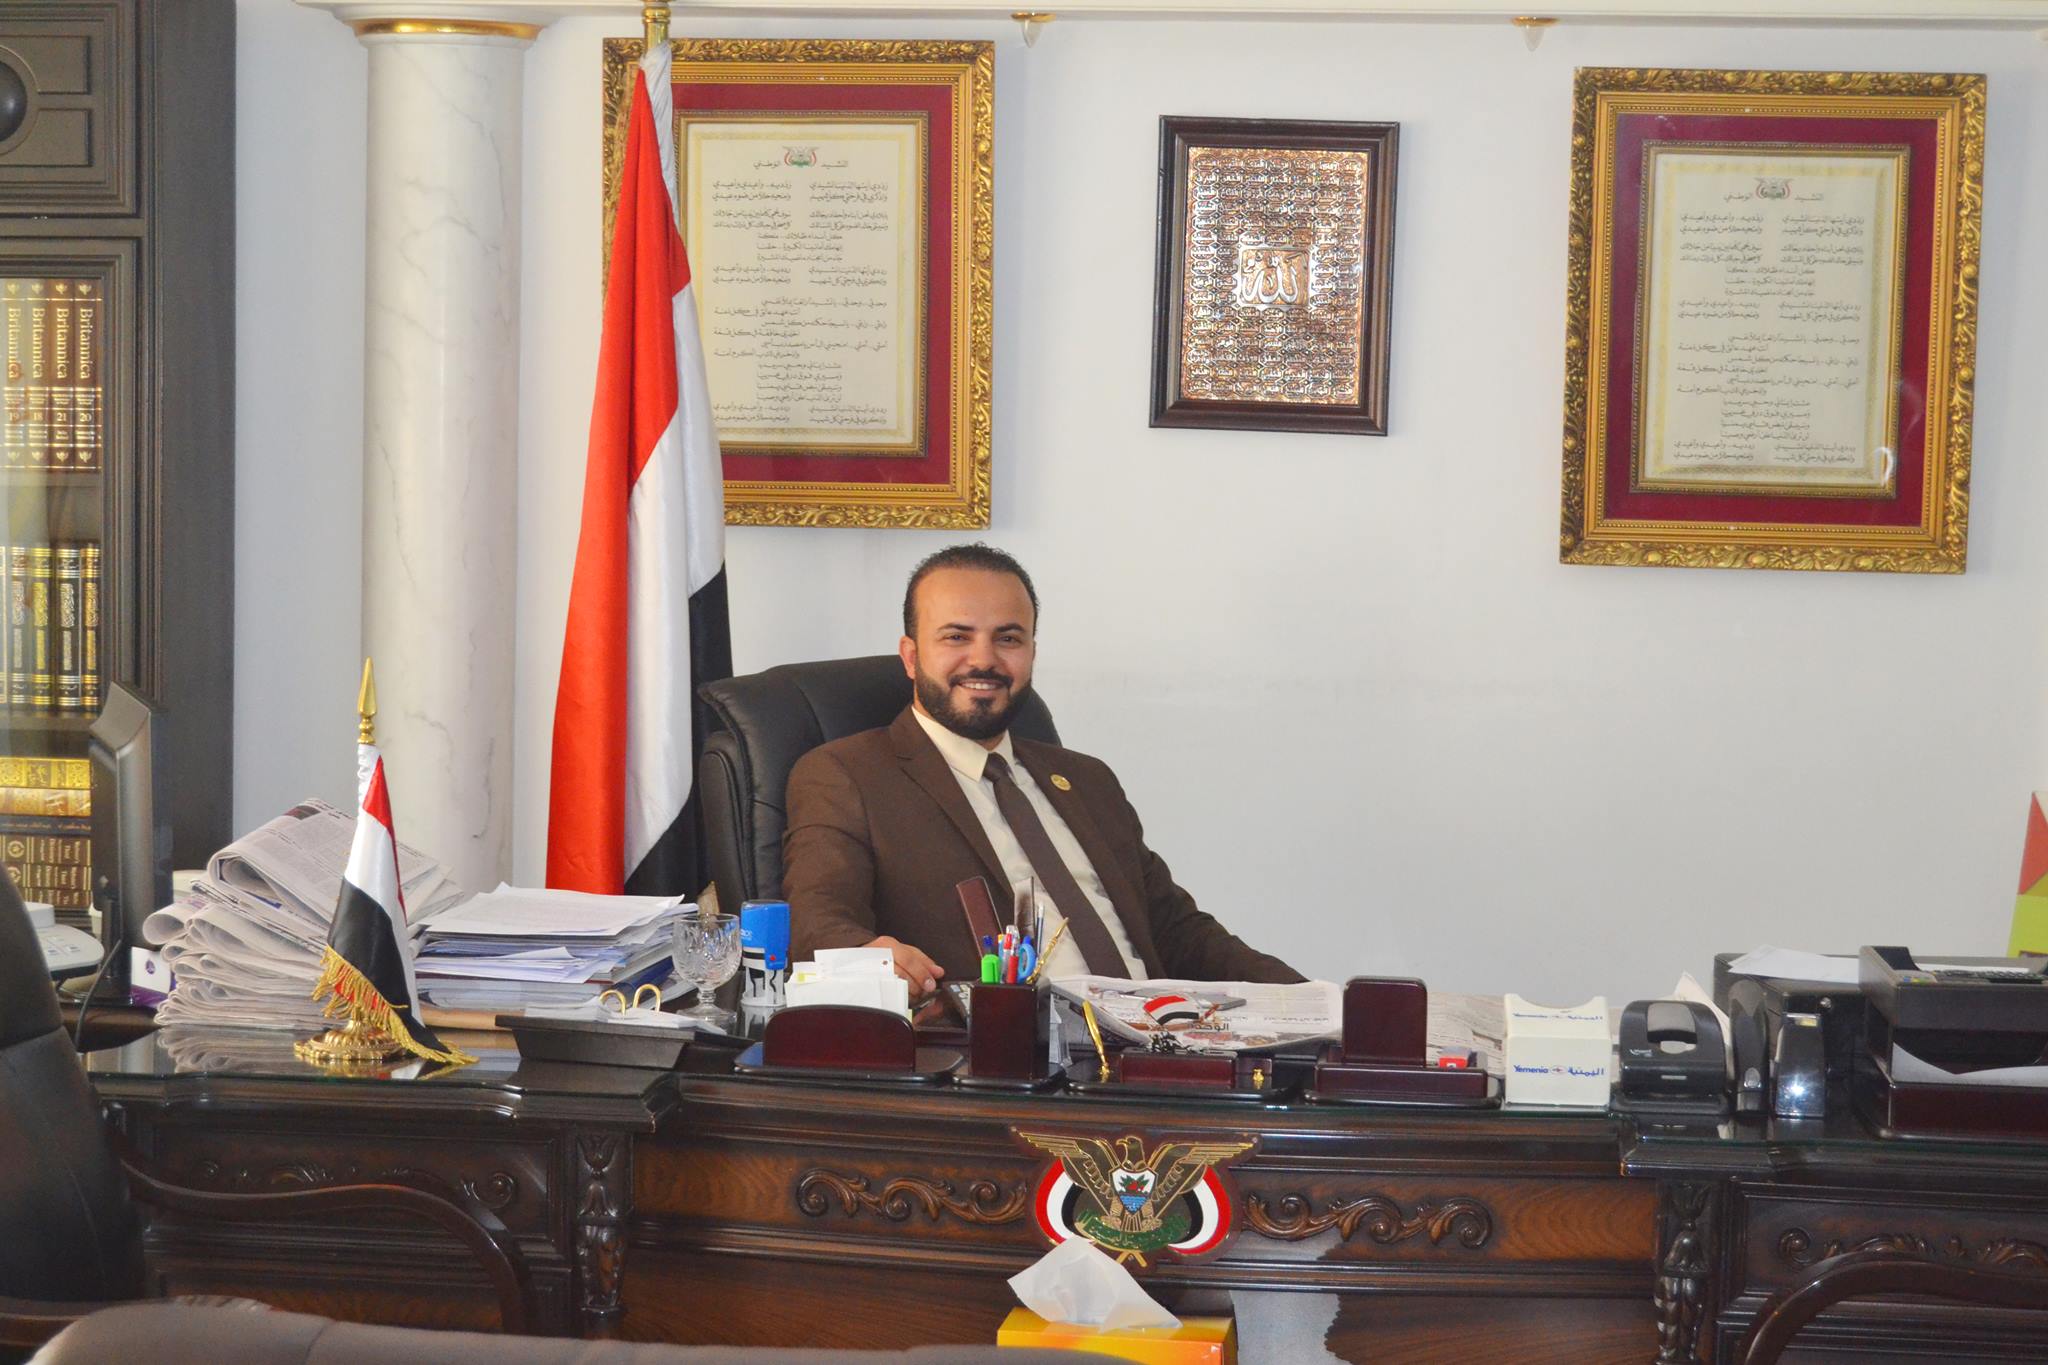 ويستمر النجاح .. المدرسة اليمنية الحديثة  تنطلق من مصر وتوسع انشطتها في السعودية واليمن 